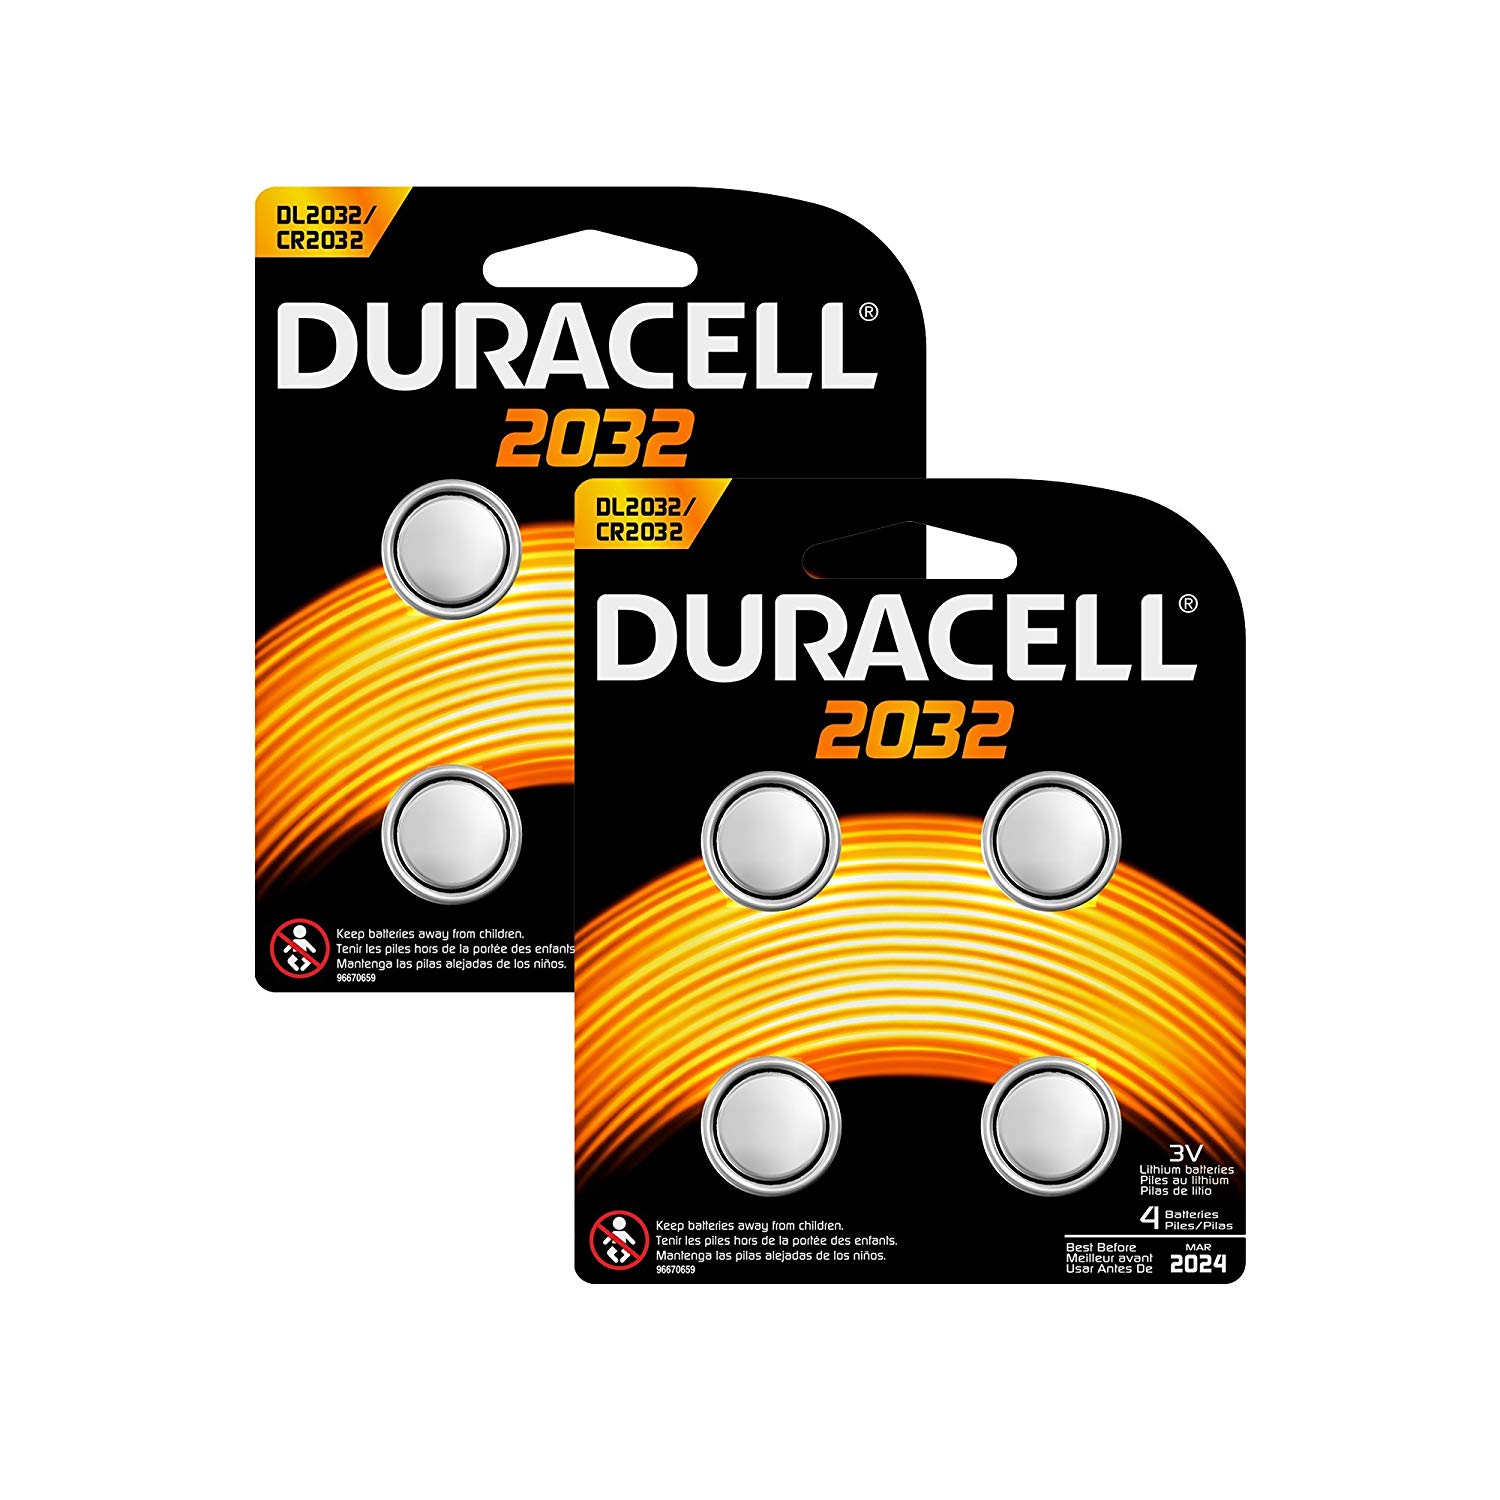 Duracell 2032 - Piles Spéciales Bouton Lithium (x 8) - Magasin de